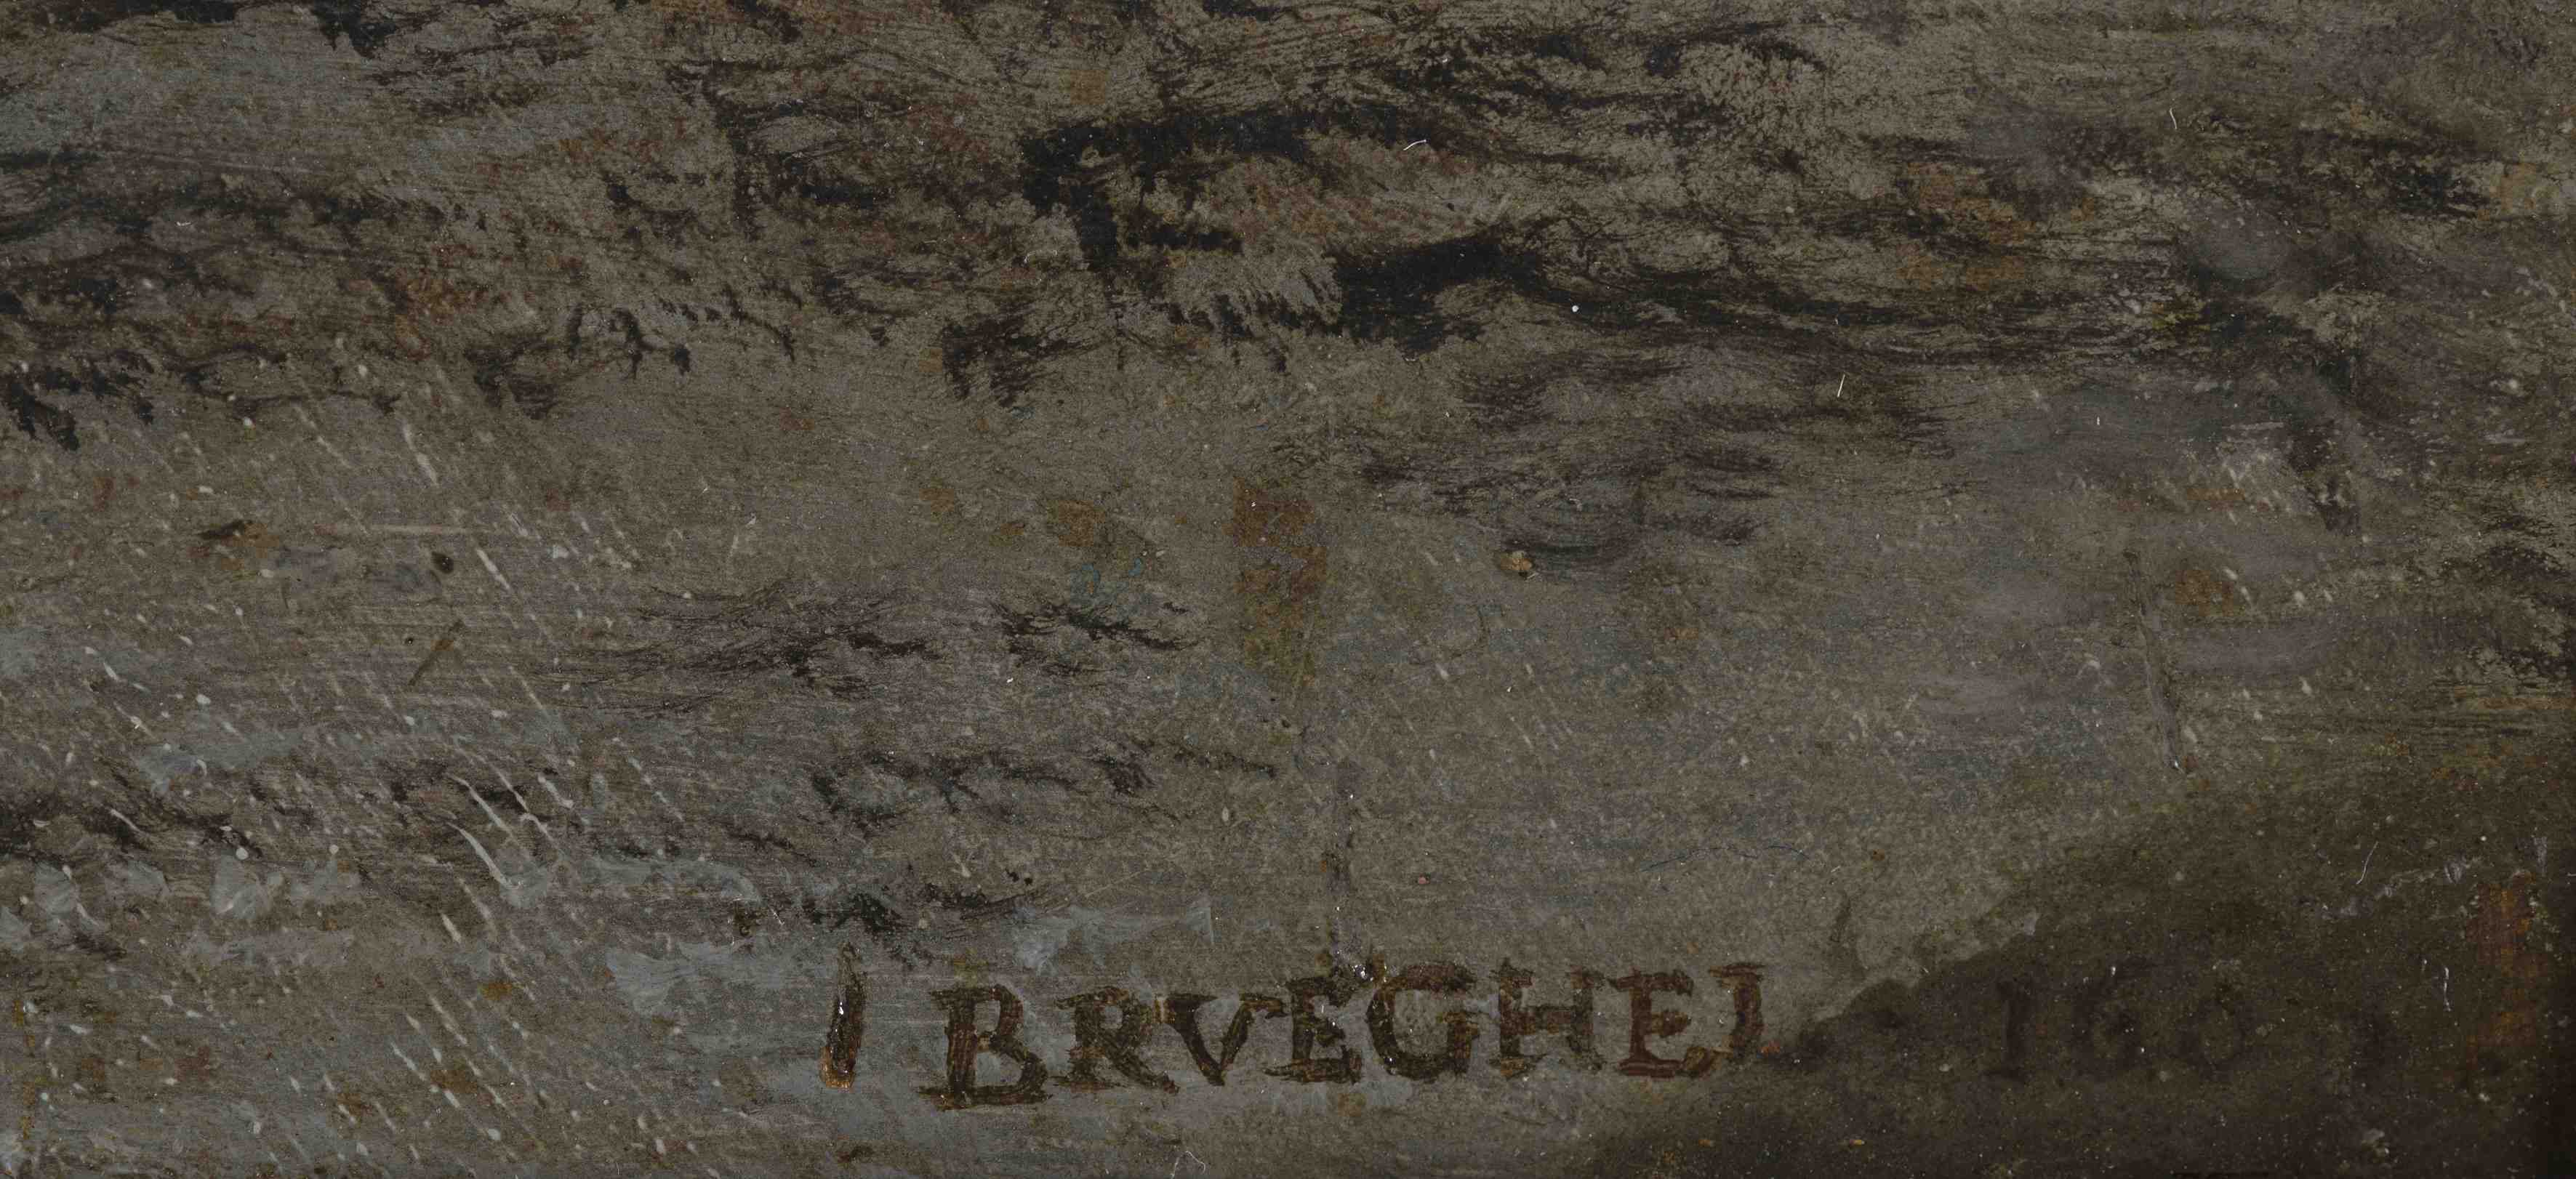 Brueghel_detail.jpg